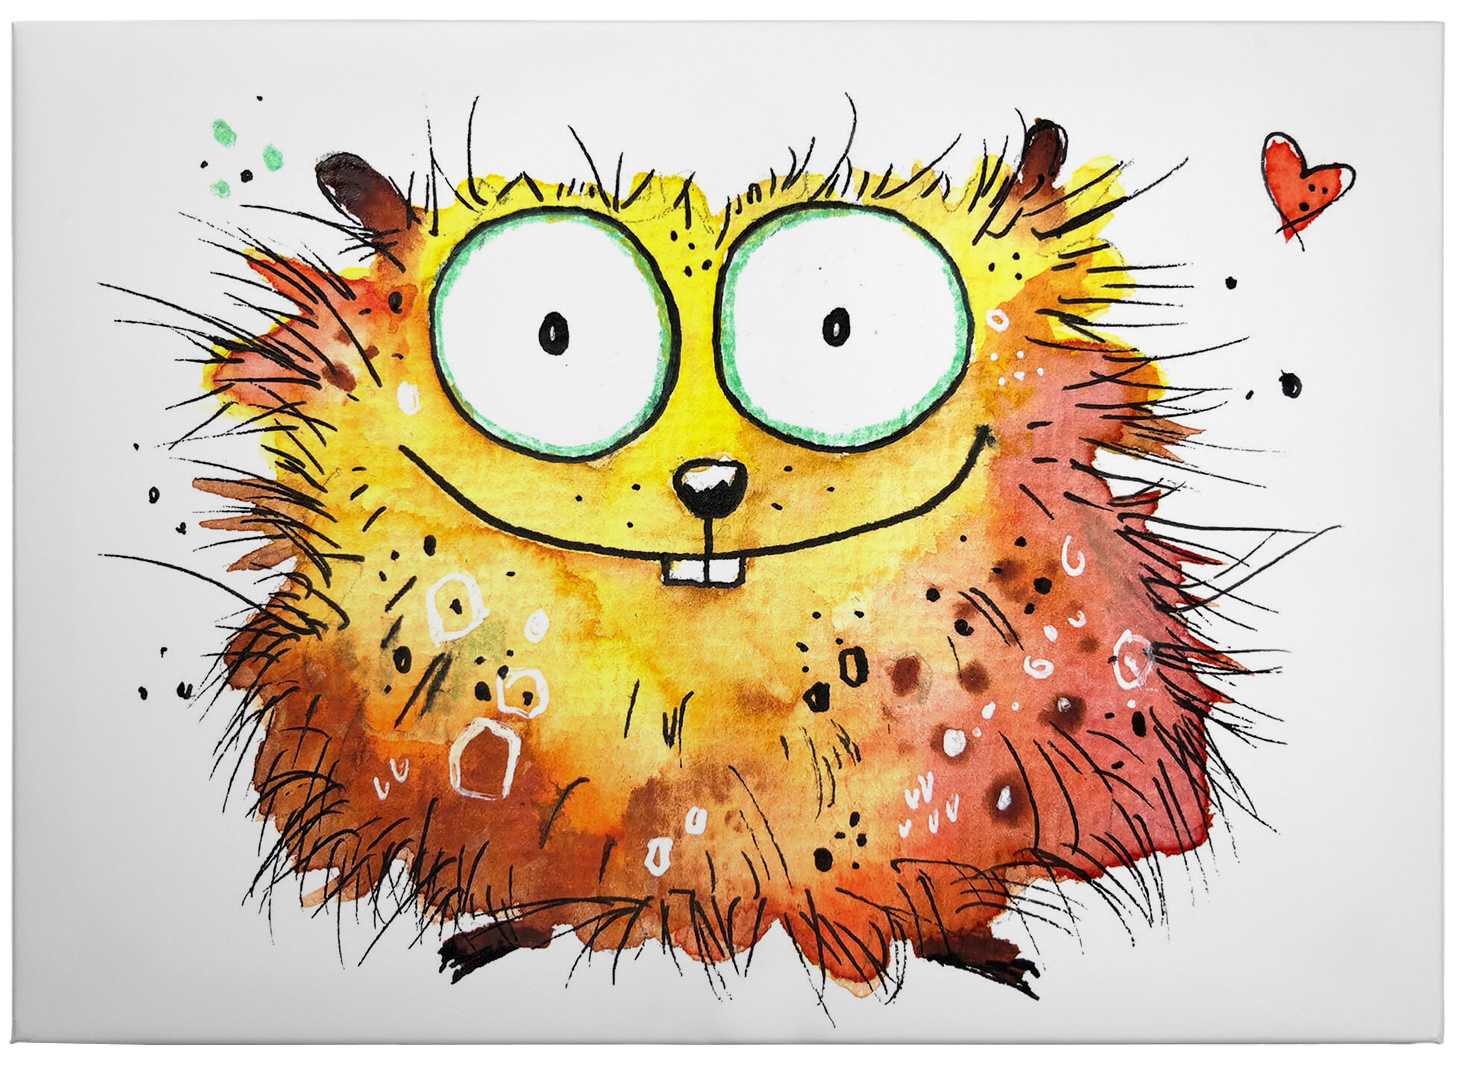             Tableau sur toile Comic Hamster pour enfants, de Hagenmeyer - 0,70 m x 0,50 m
        